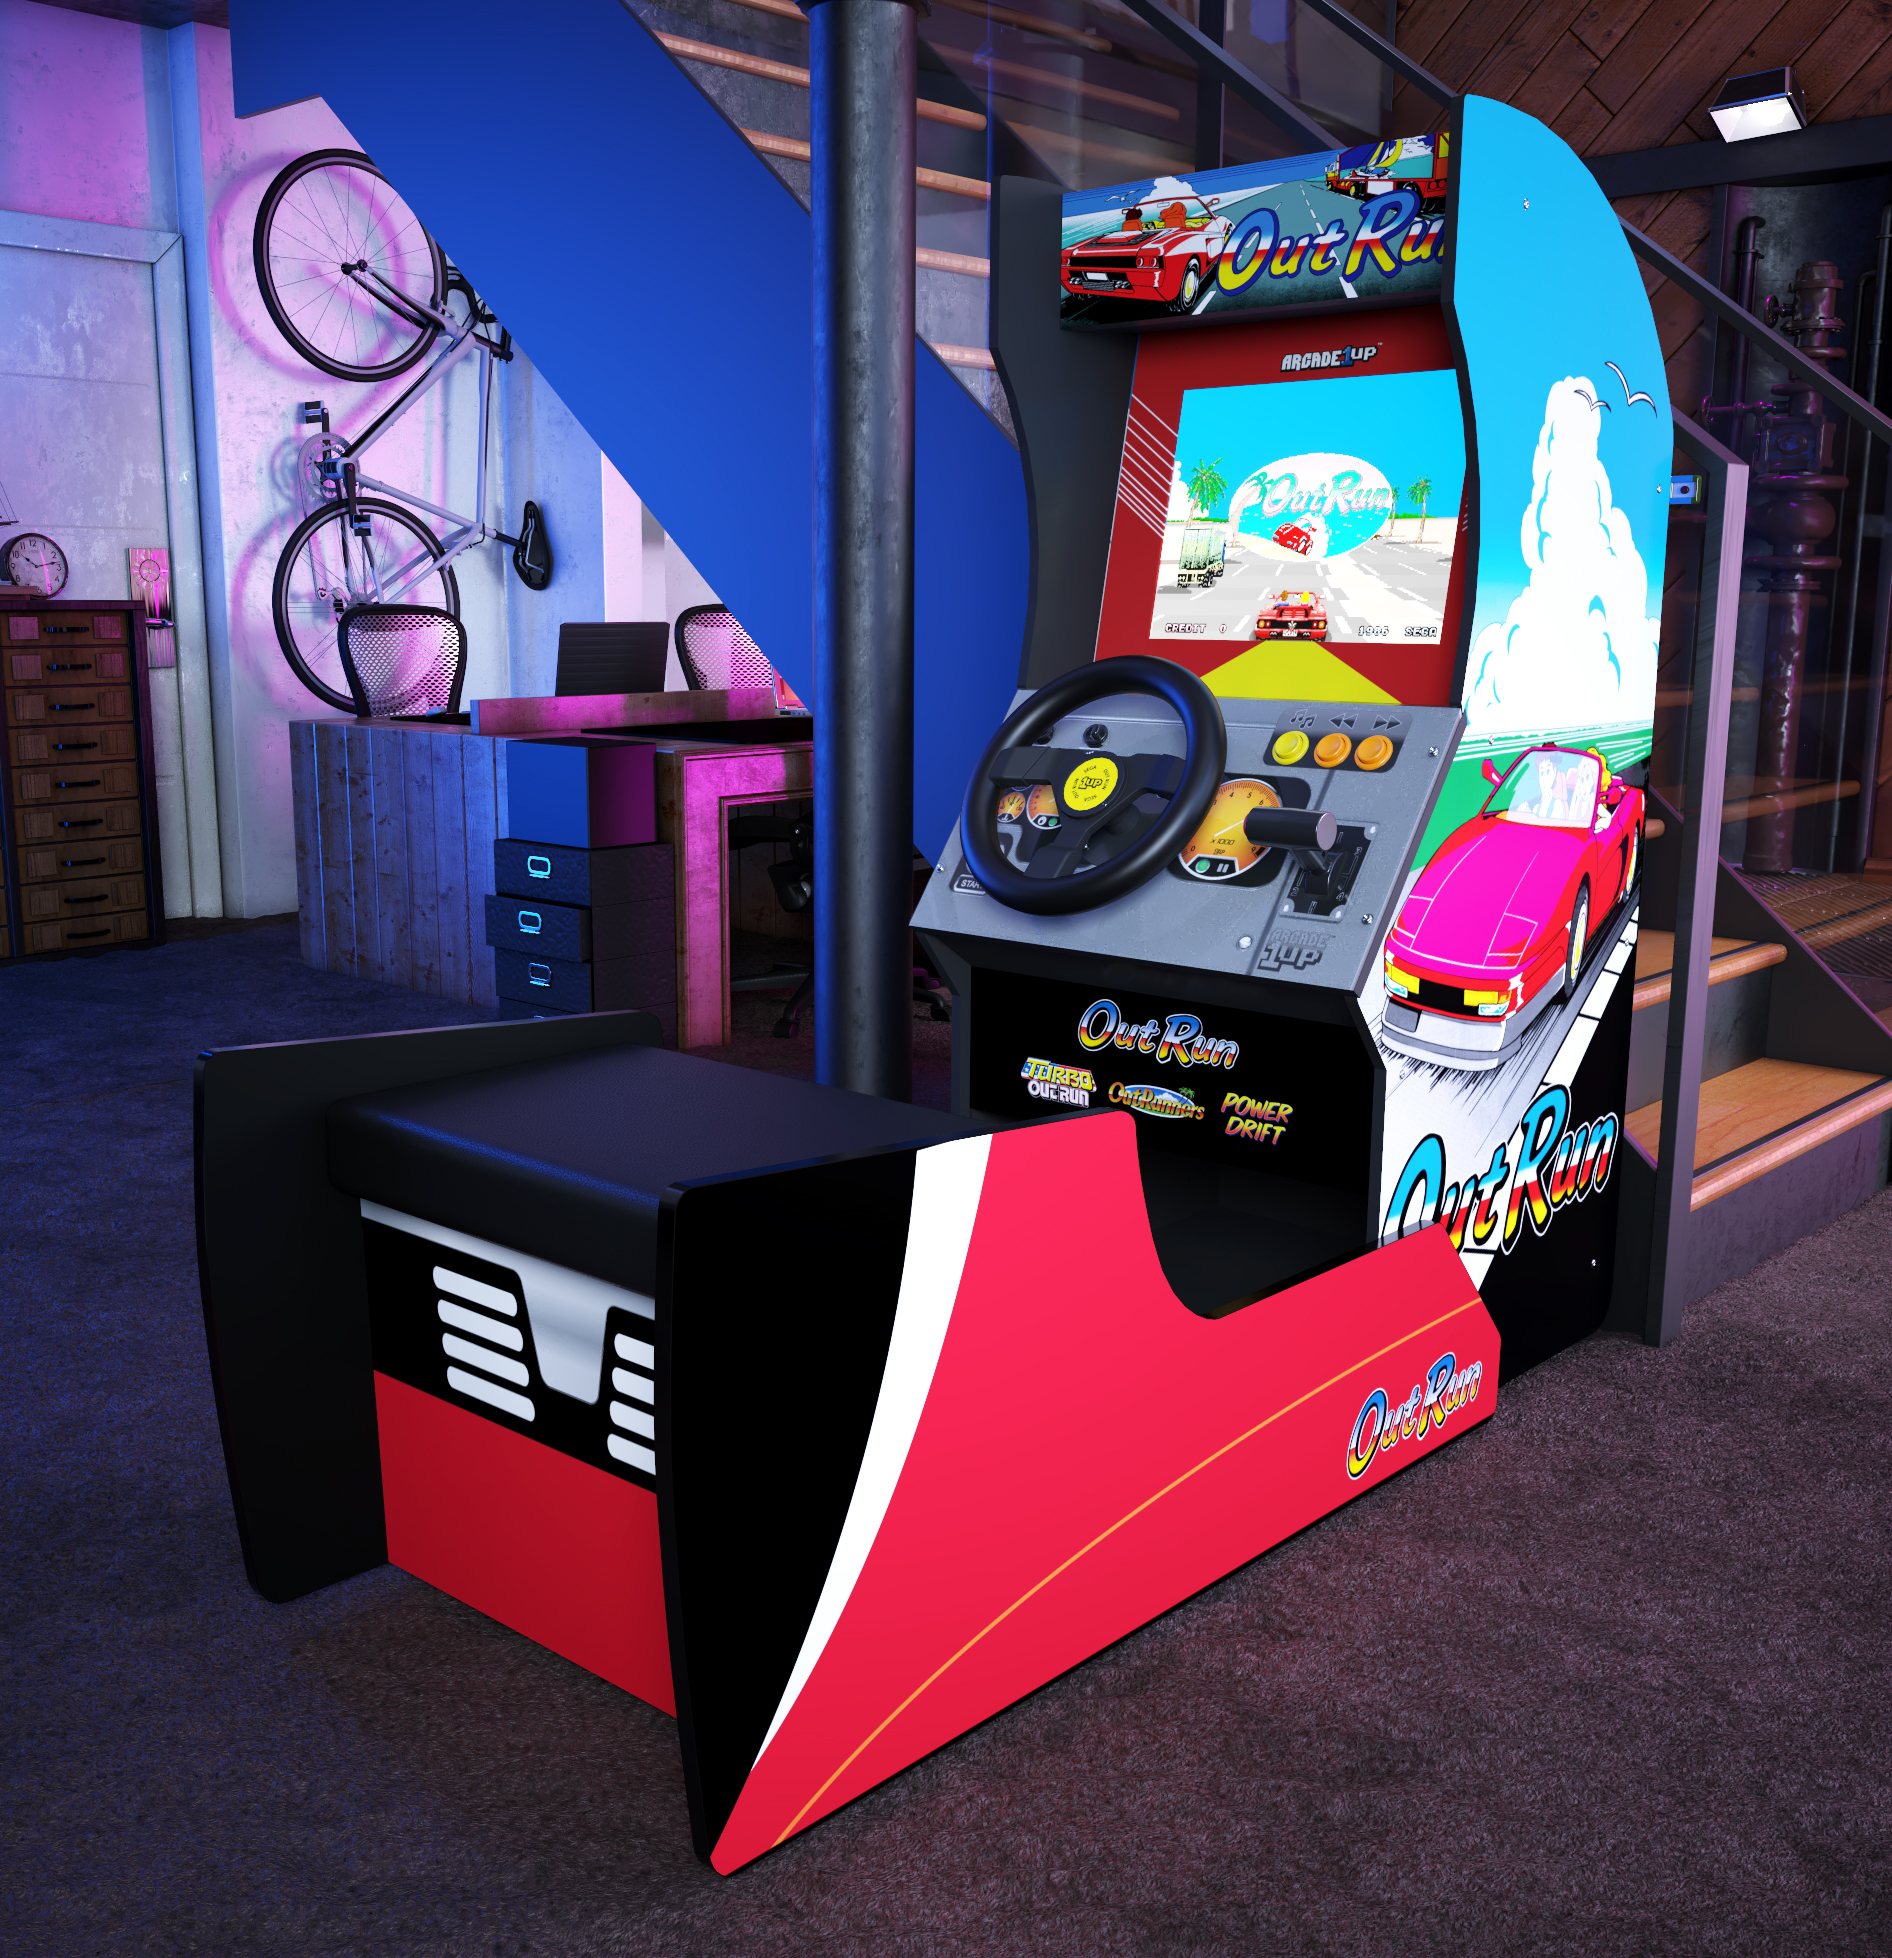 家庭用ゲーム筐体 Arcade1up Outrun が21年8月より発売 自宅がまるでゲームセンター 株式会社シャインのプレスリリース